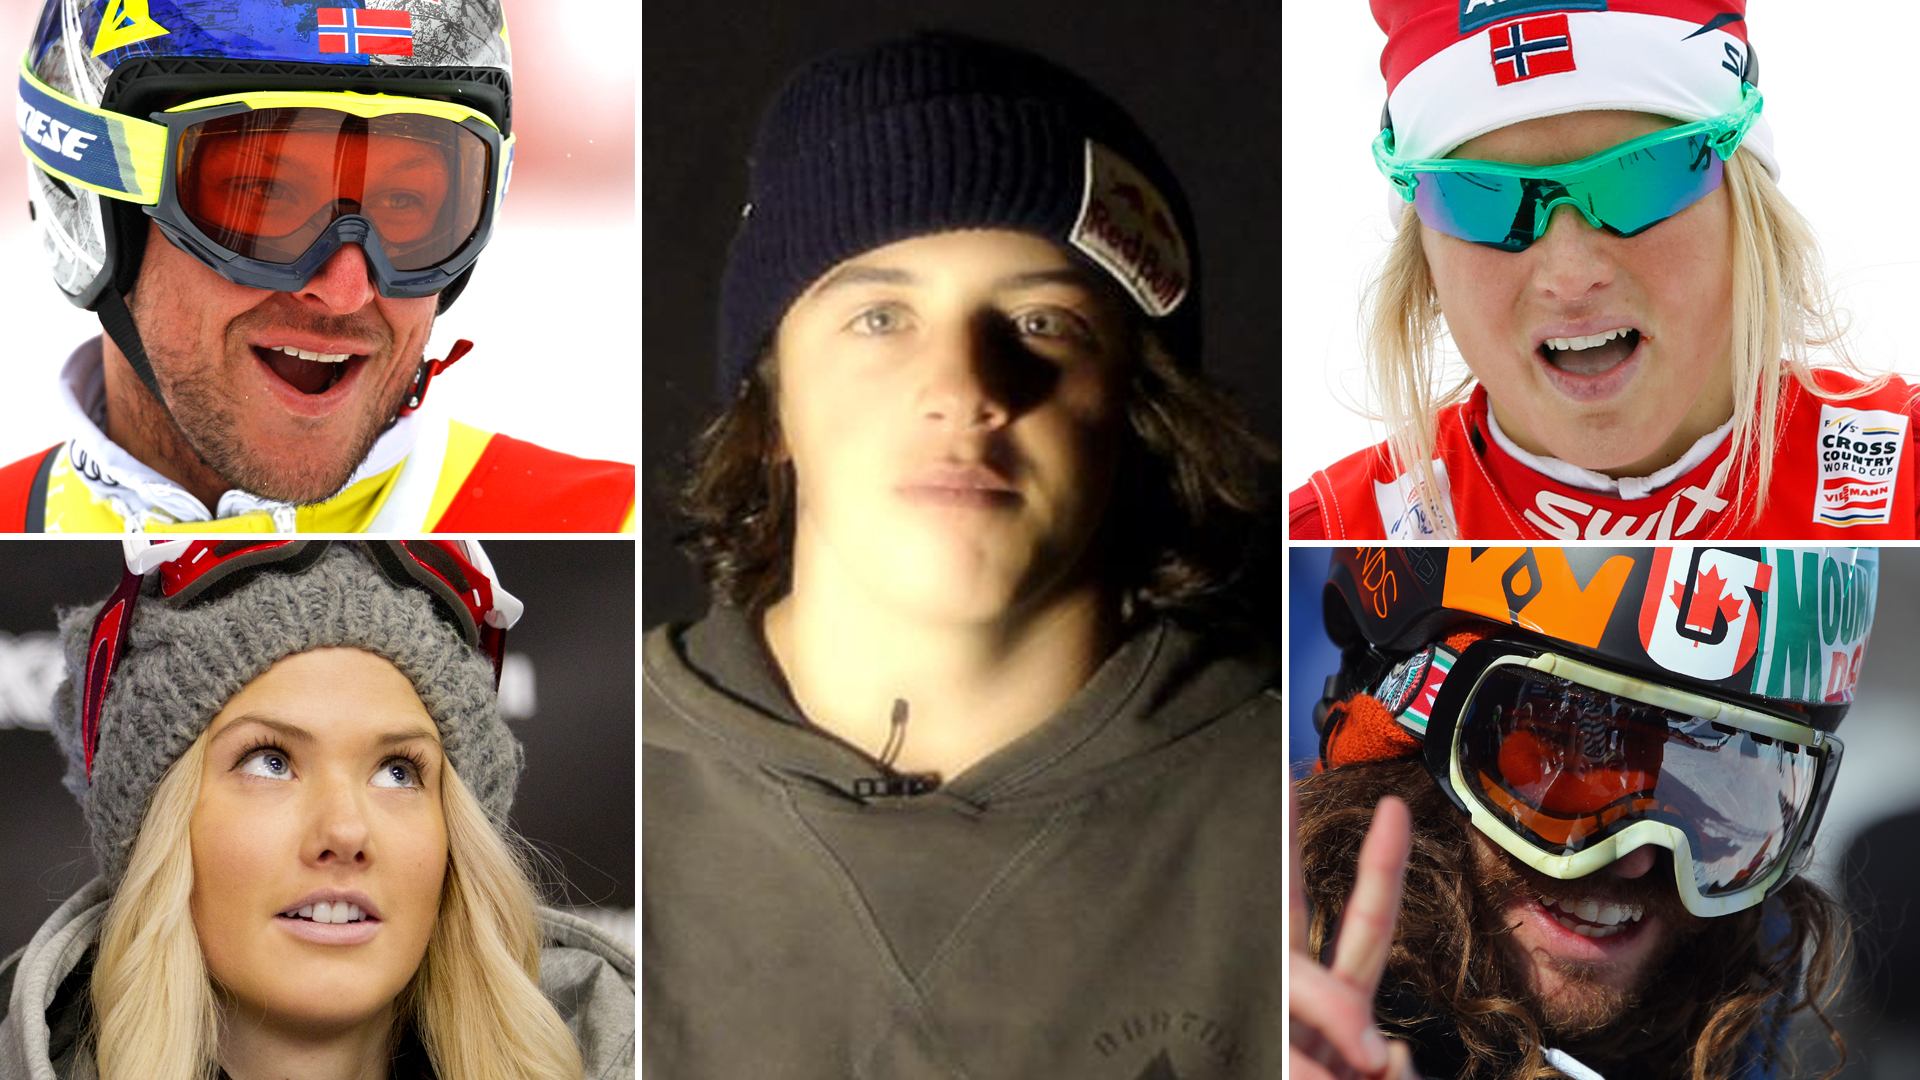 Idrettsprofiler som Aksel Lund Svindal og Therese Johaug, samt snøbrettkjørere som Marc McMorris og Silje Norendal, har alle meninger om snøbrettsporten.